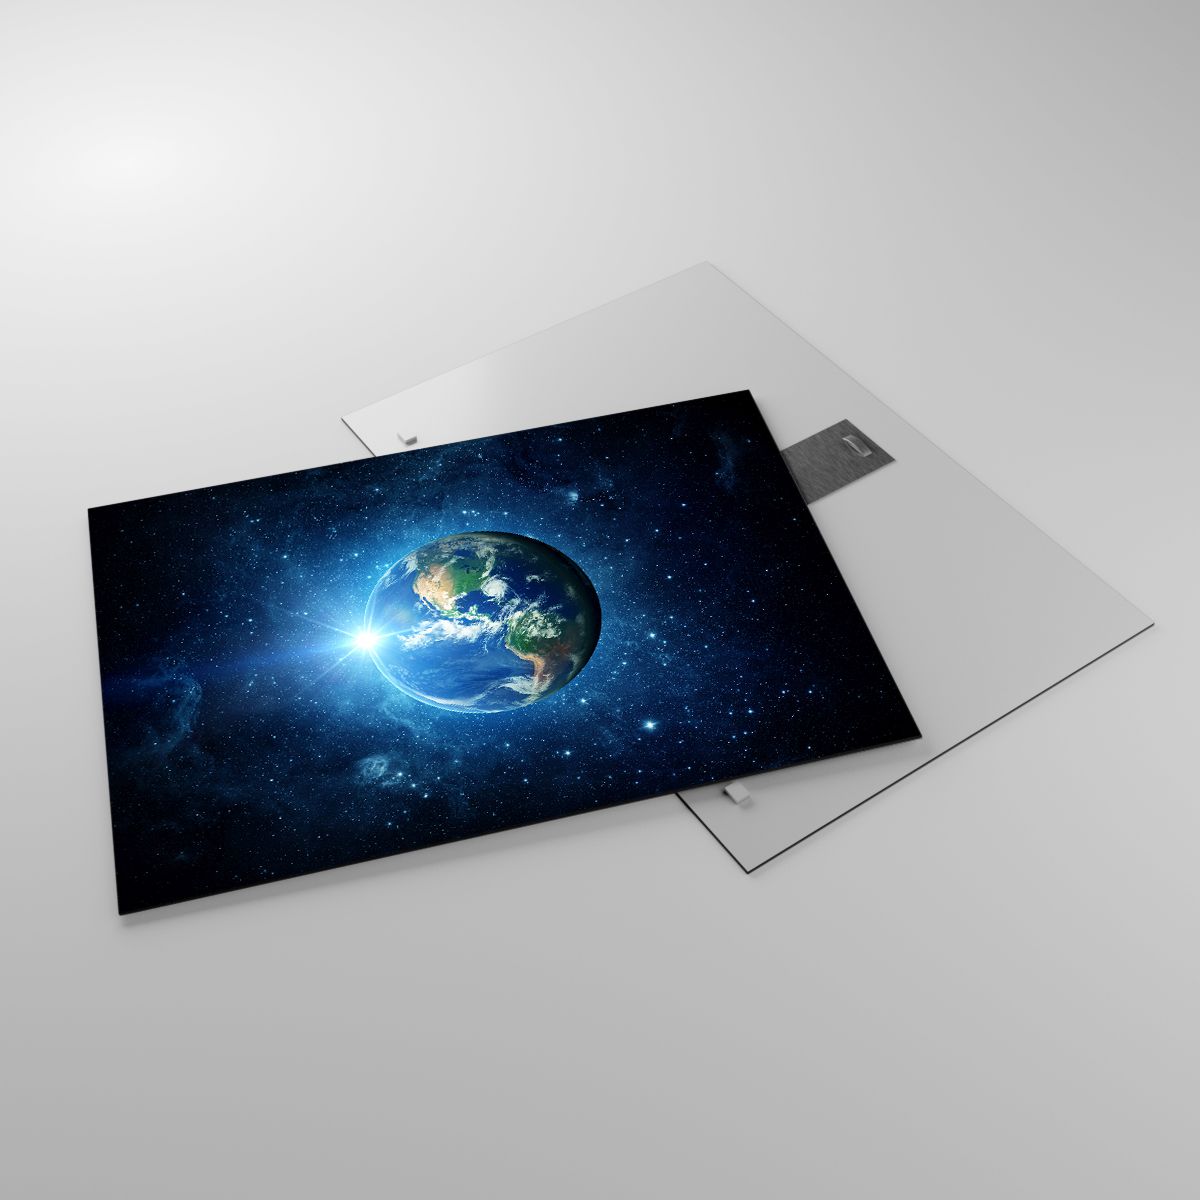 Glasbild Kosmos, Glasbild Planet Erde, Glasbild Globus, Glasbild Sterne Im Himmel, Glasbild Grafik